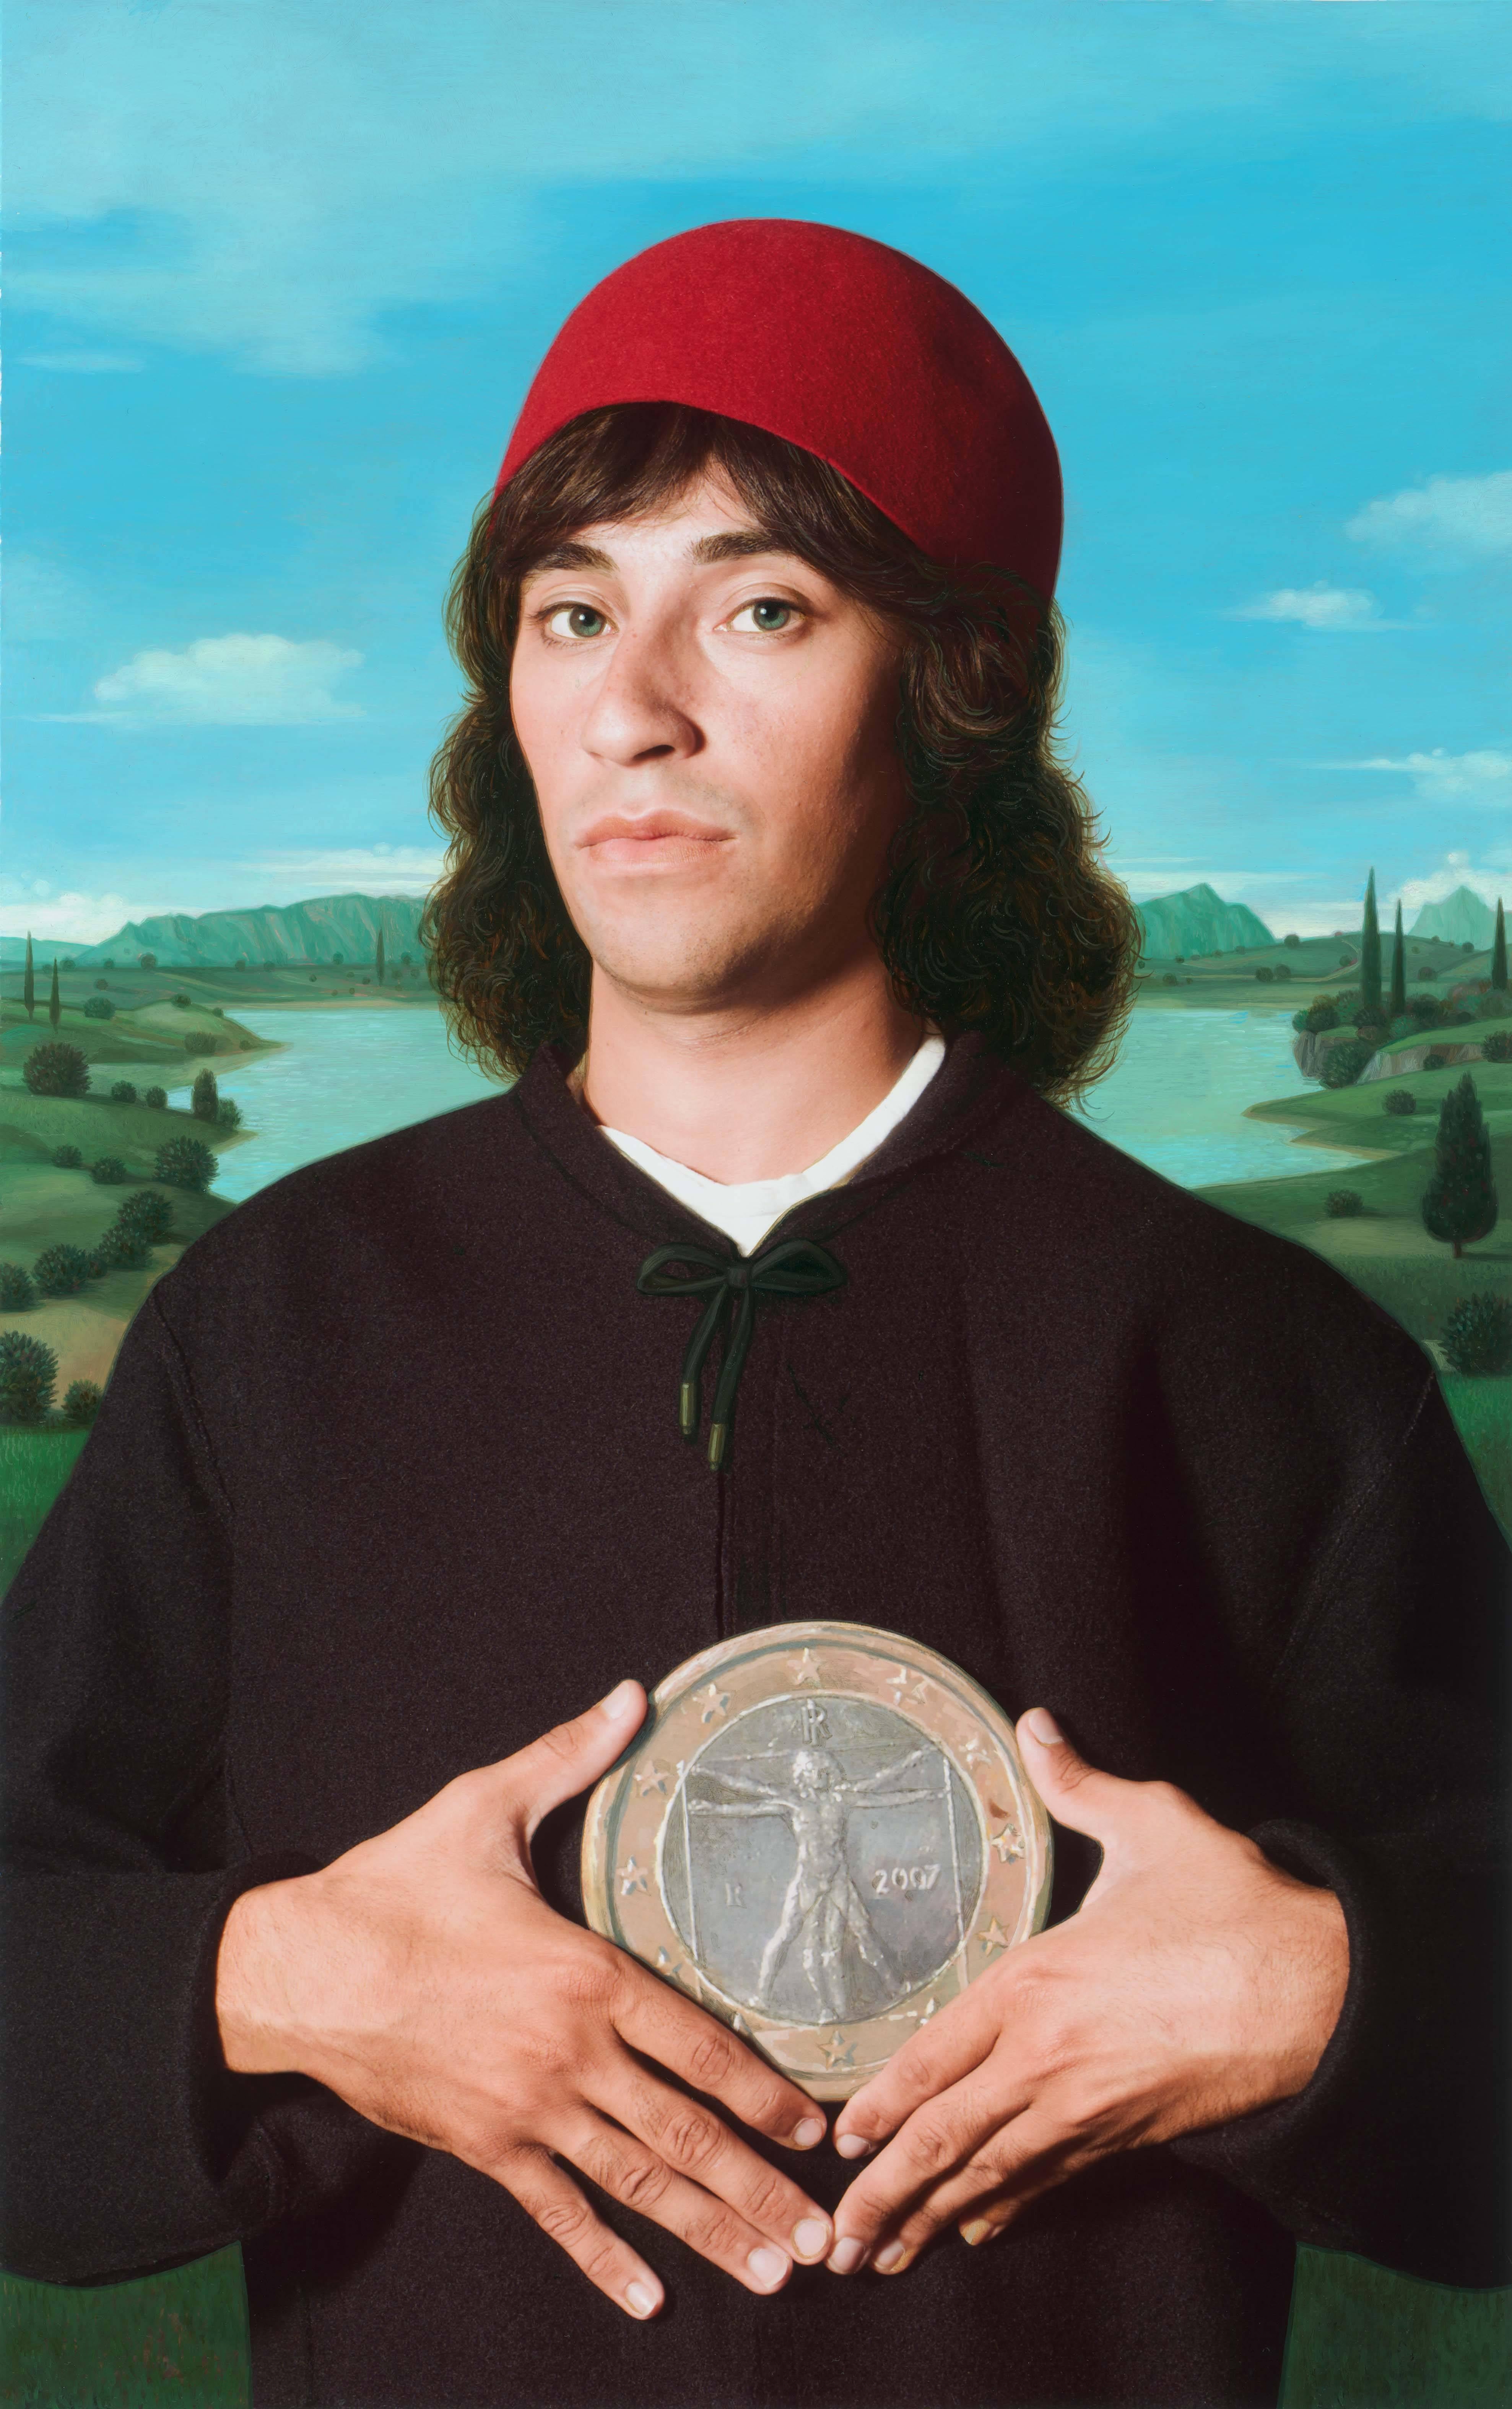 Figurative Photograph E2 - Kleinveld & Julien - Ode au portrait d'un homme avec une médaille de Cosimo l'Ancien de Botticelli